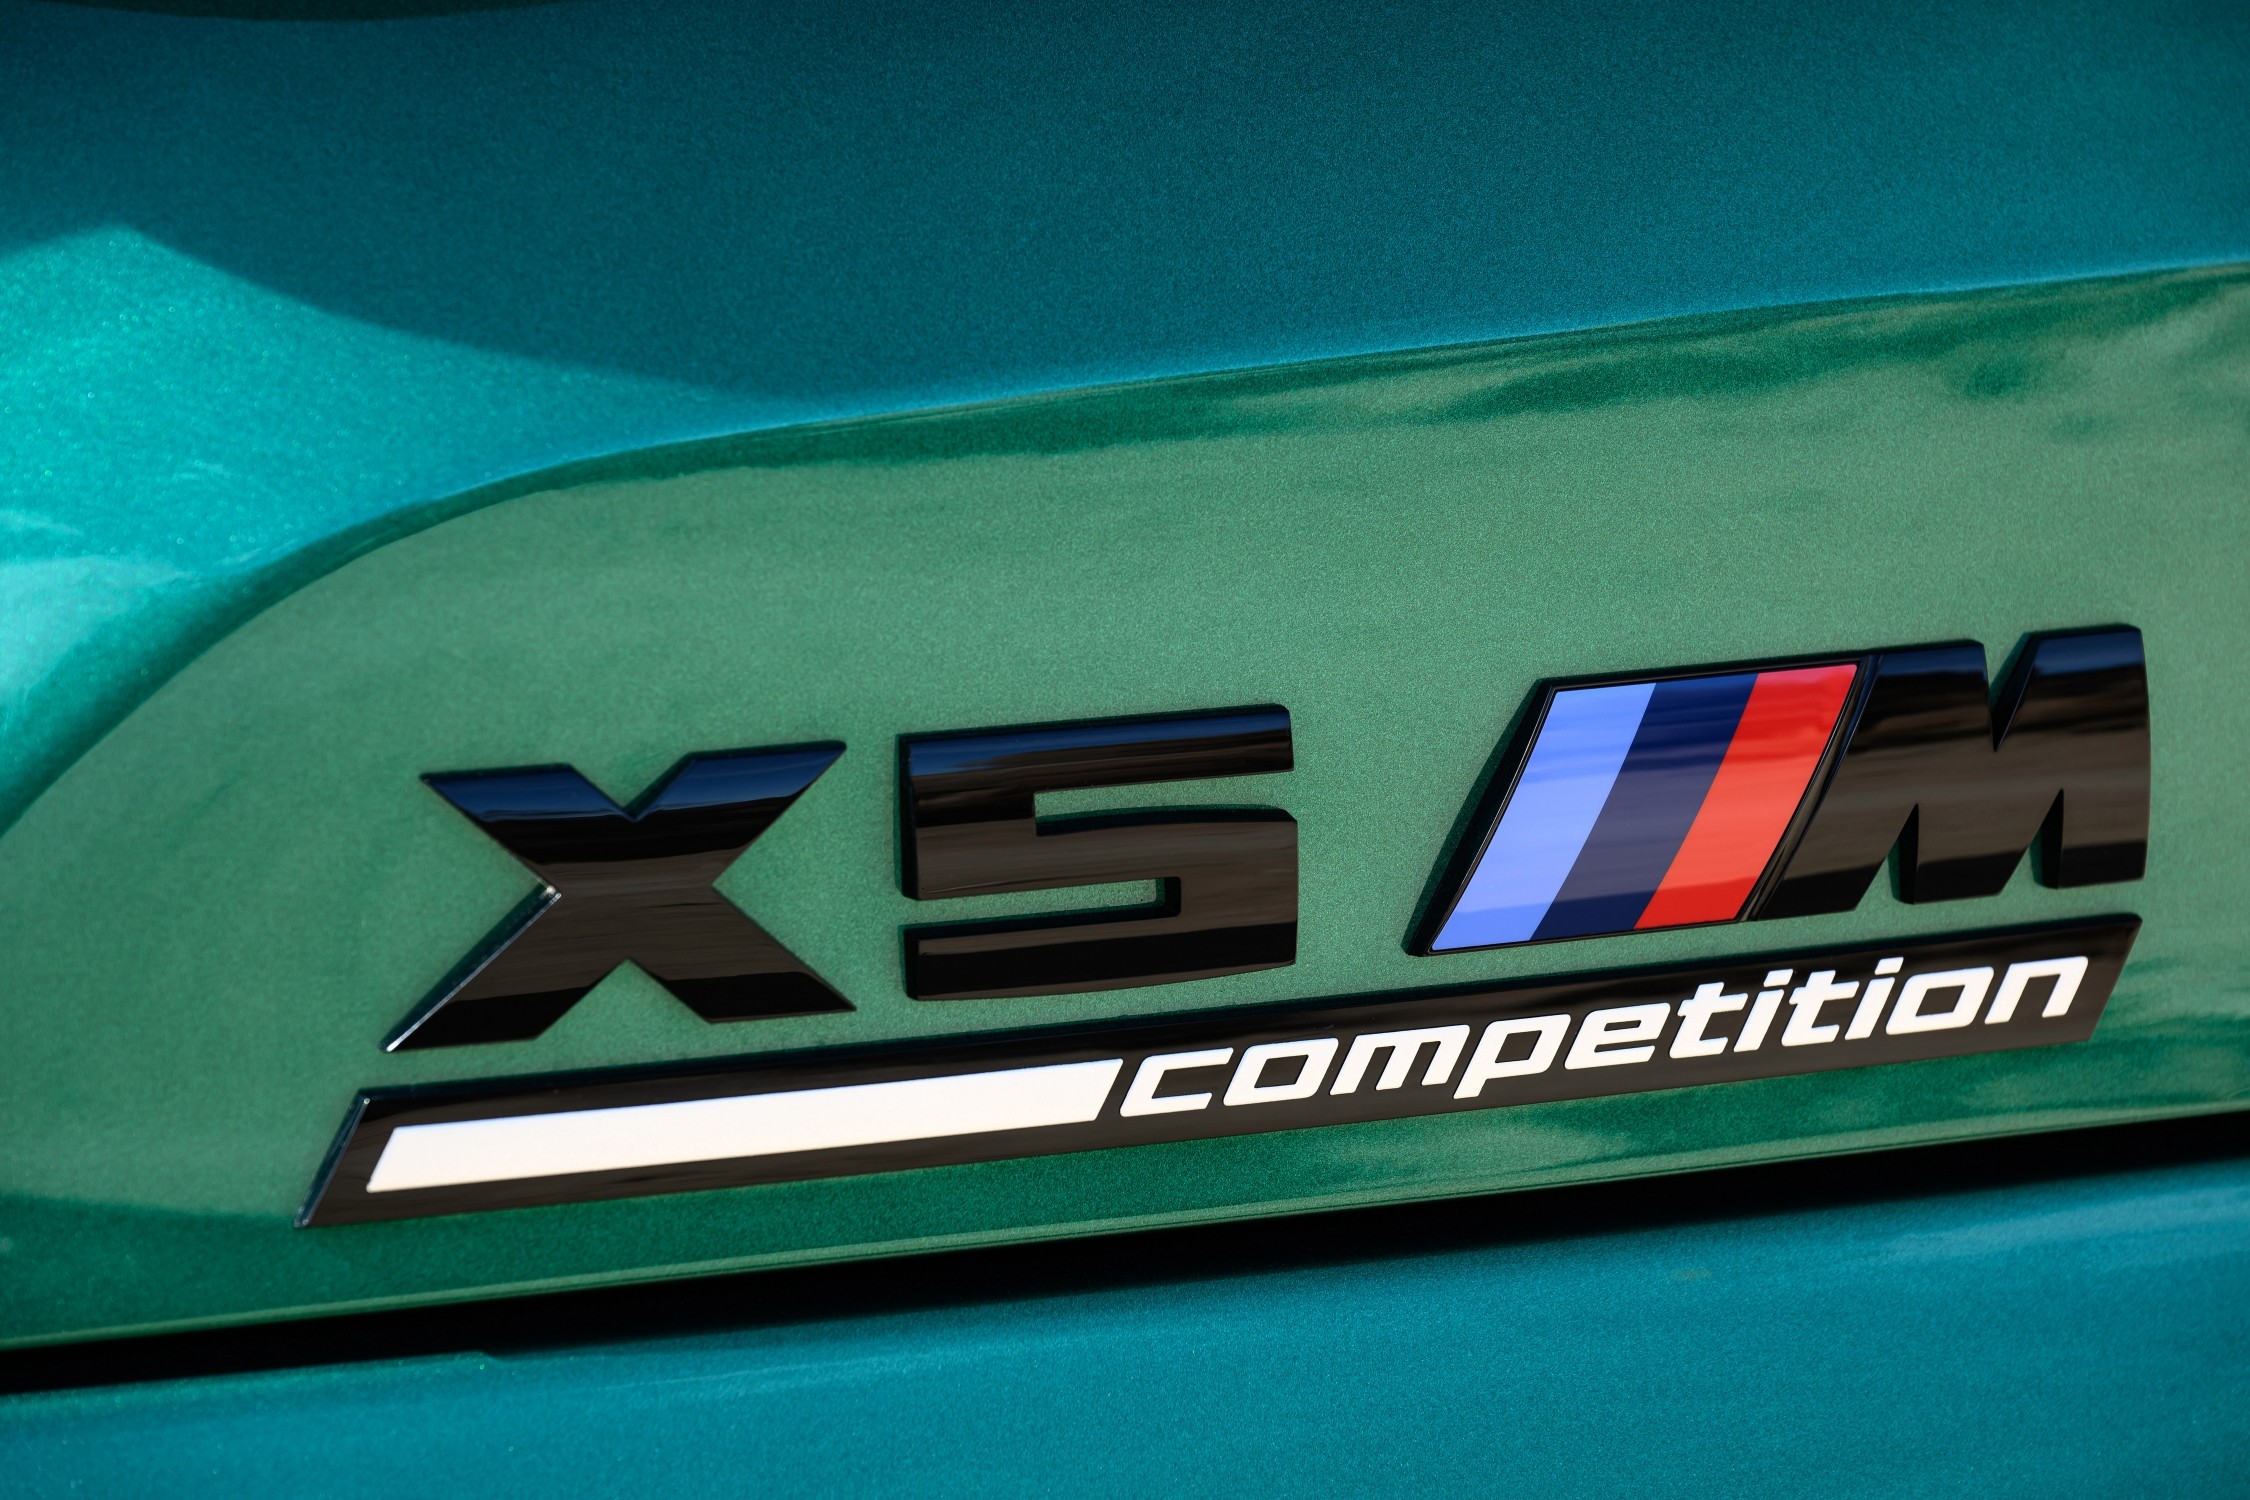 BMW X5 — Kohla-Strauss GmbH